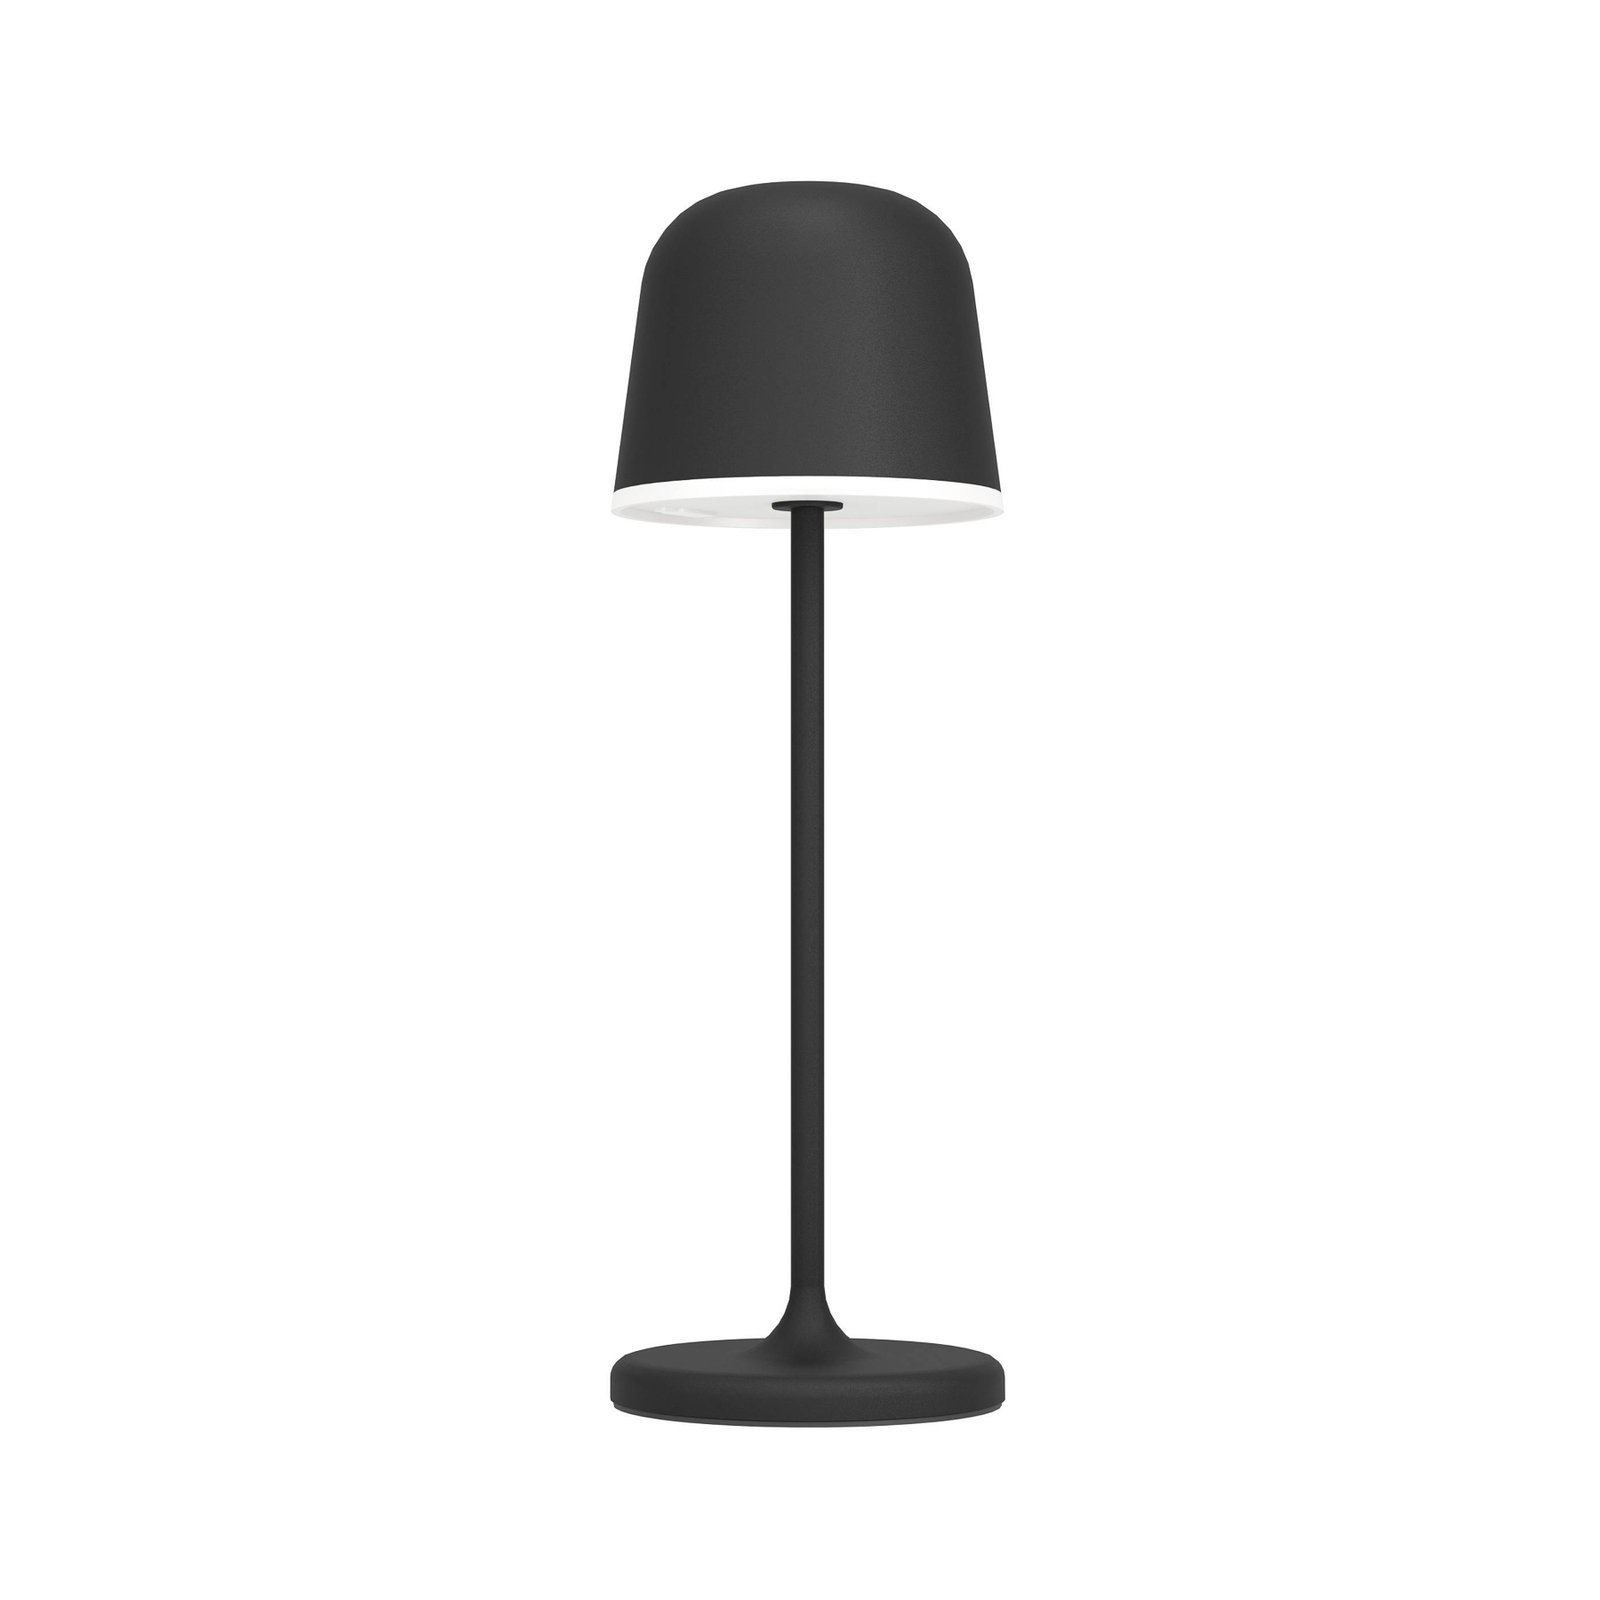 LED asztali világítás Mannera, akkumulátor, fekete